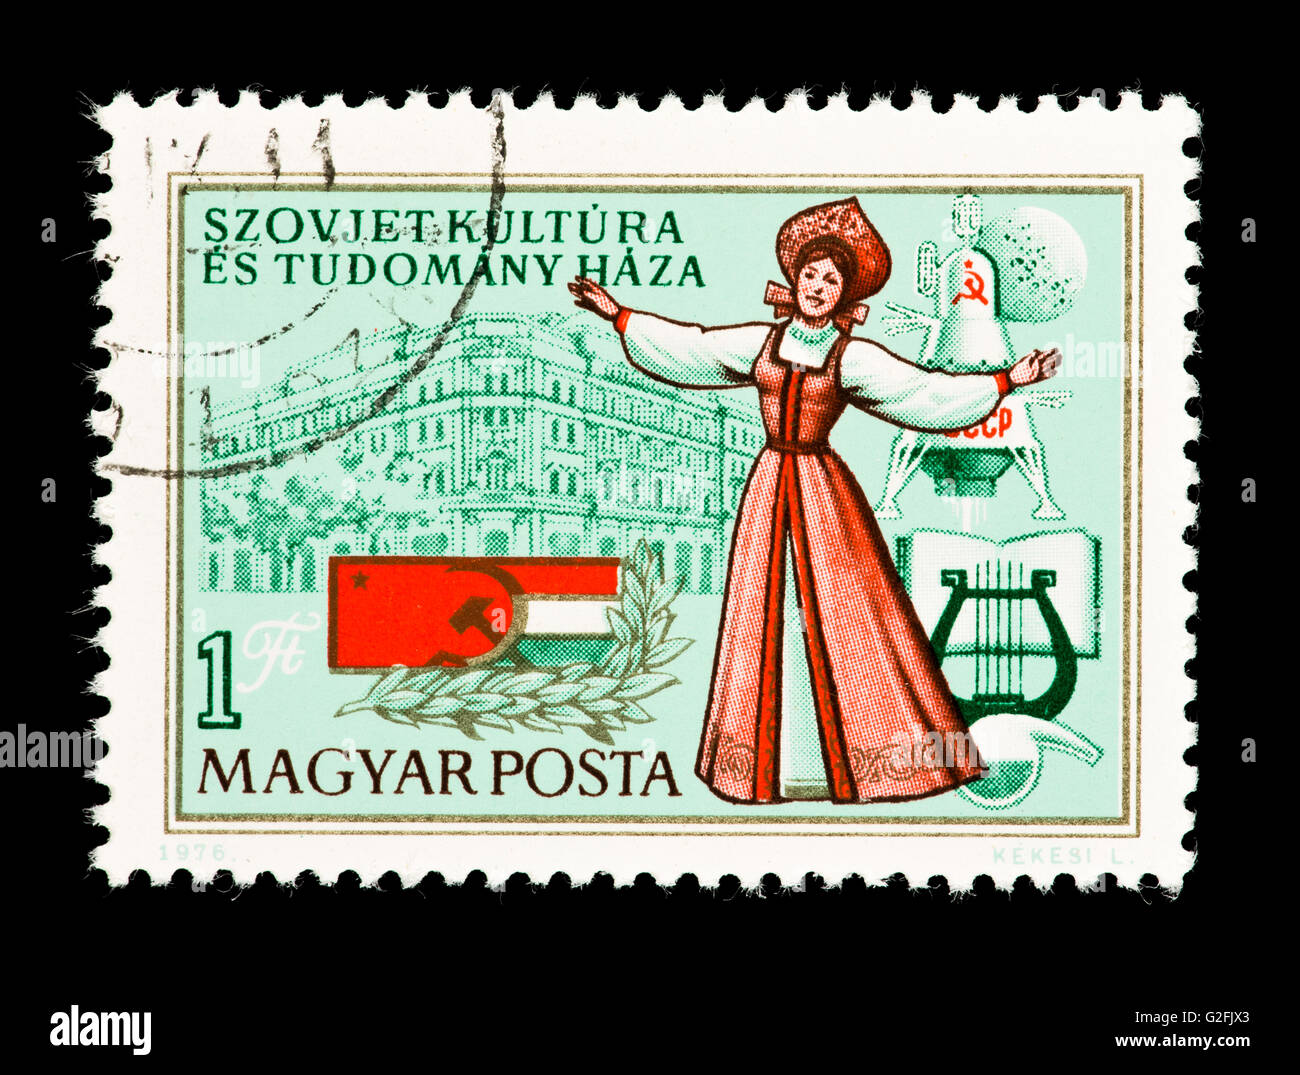 Timbre-poste de Hongrie représentant la maison de la culture et de la Science, le géorgien et danseur soviétique hongrois et drapeaux. Banque D'Images